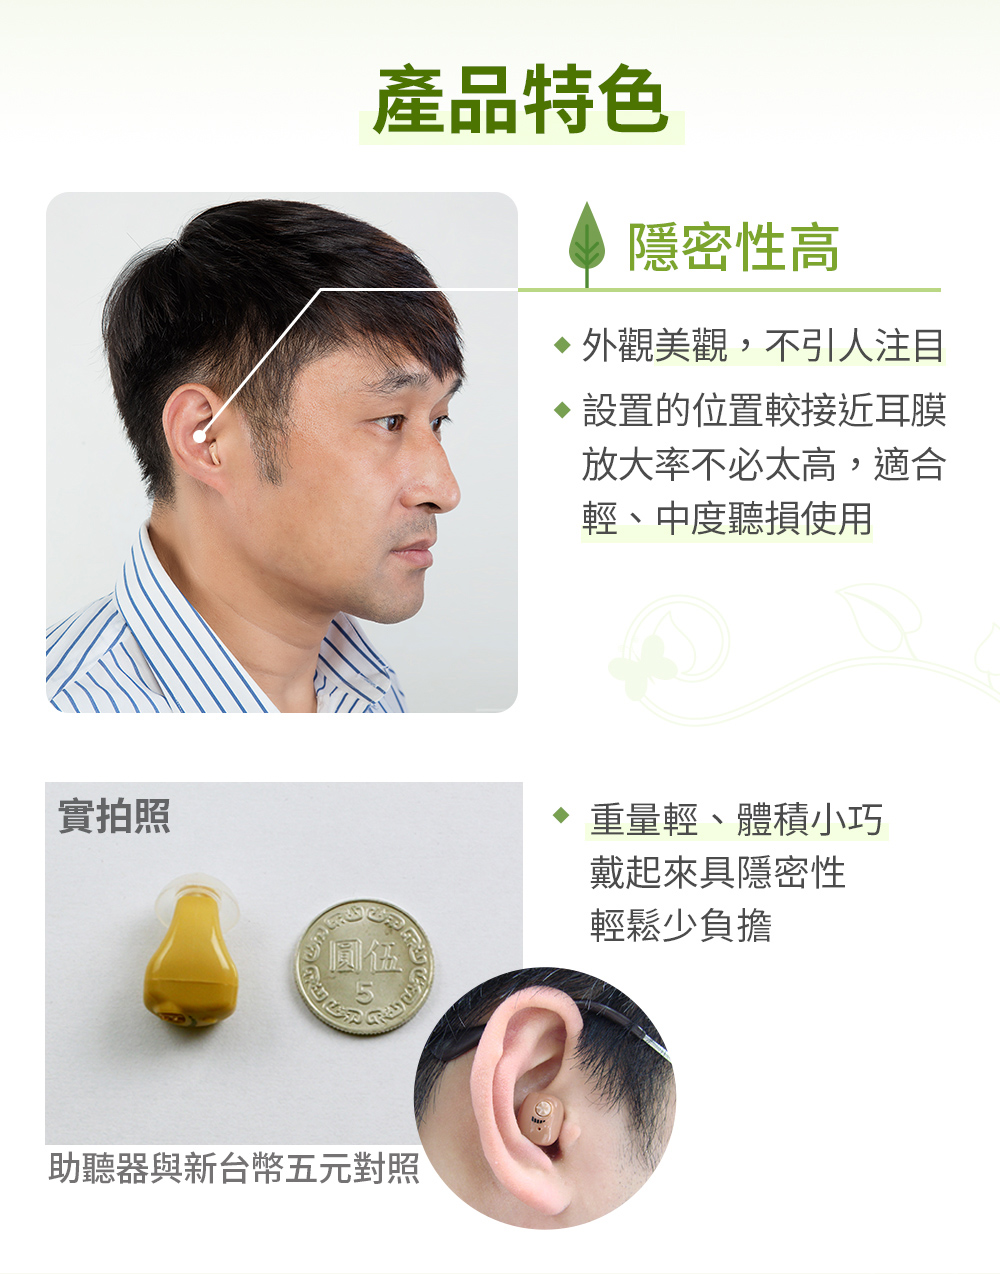 【Mimitakara 耳寶】單耳充電式耳內型助聽器/輔聽器 6SA2 